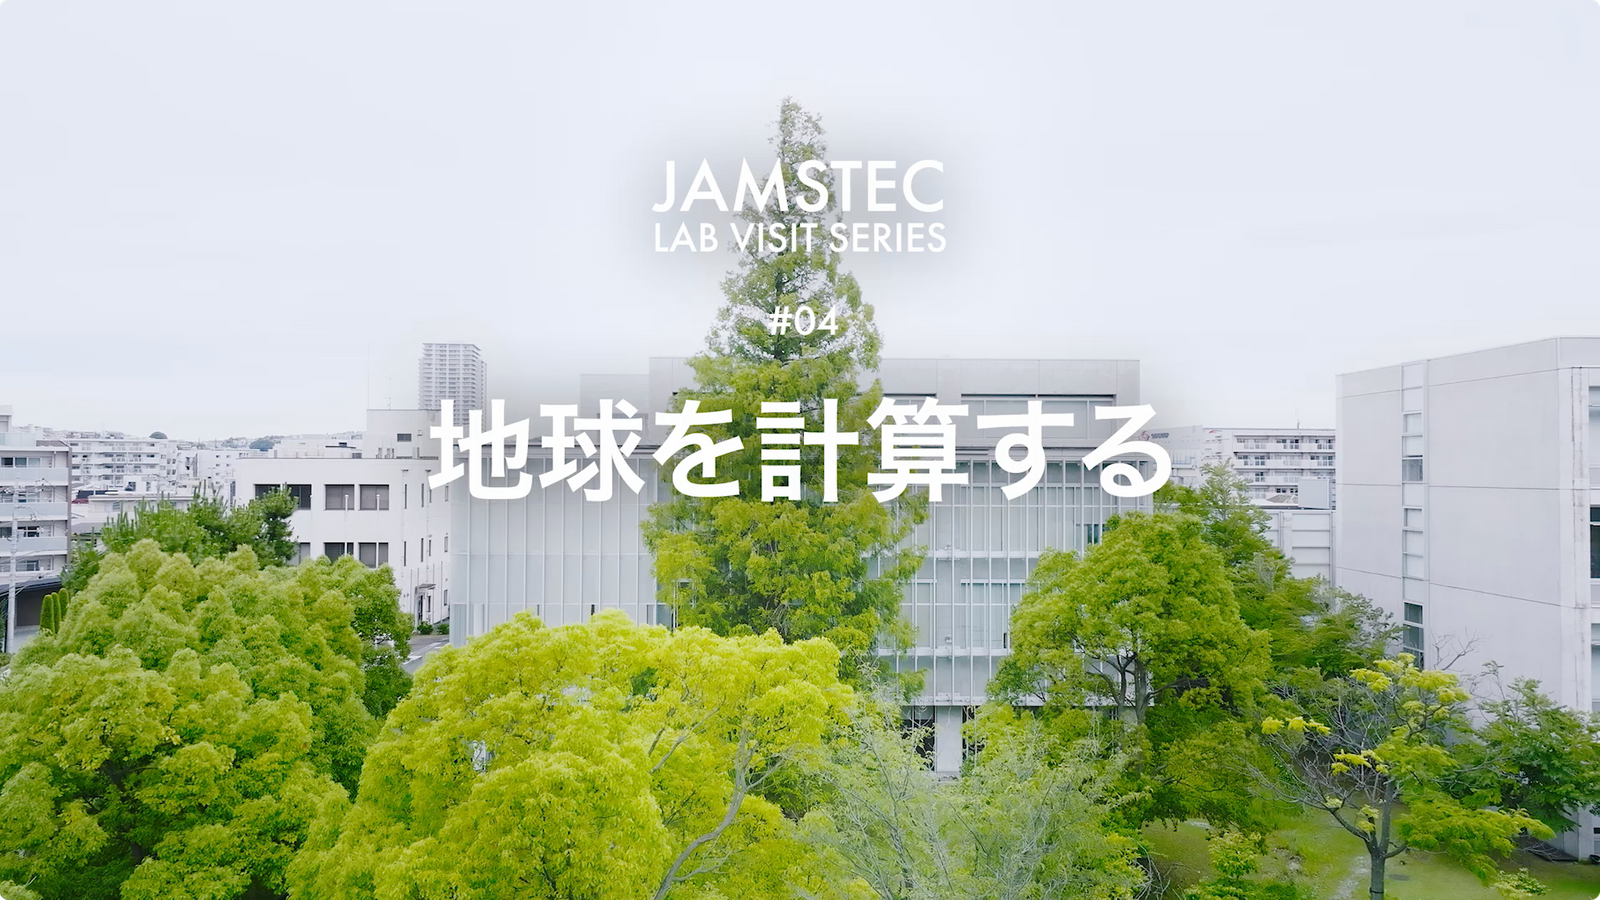 JAMSTEC 海洋研究開発機構 「地球を計算する」JAMSTEC LAB VISIT SERIES 04 映像